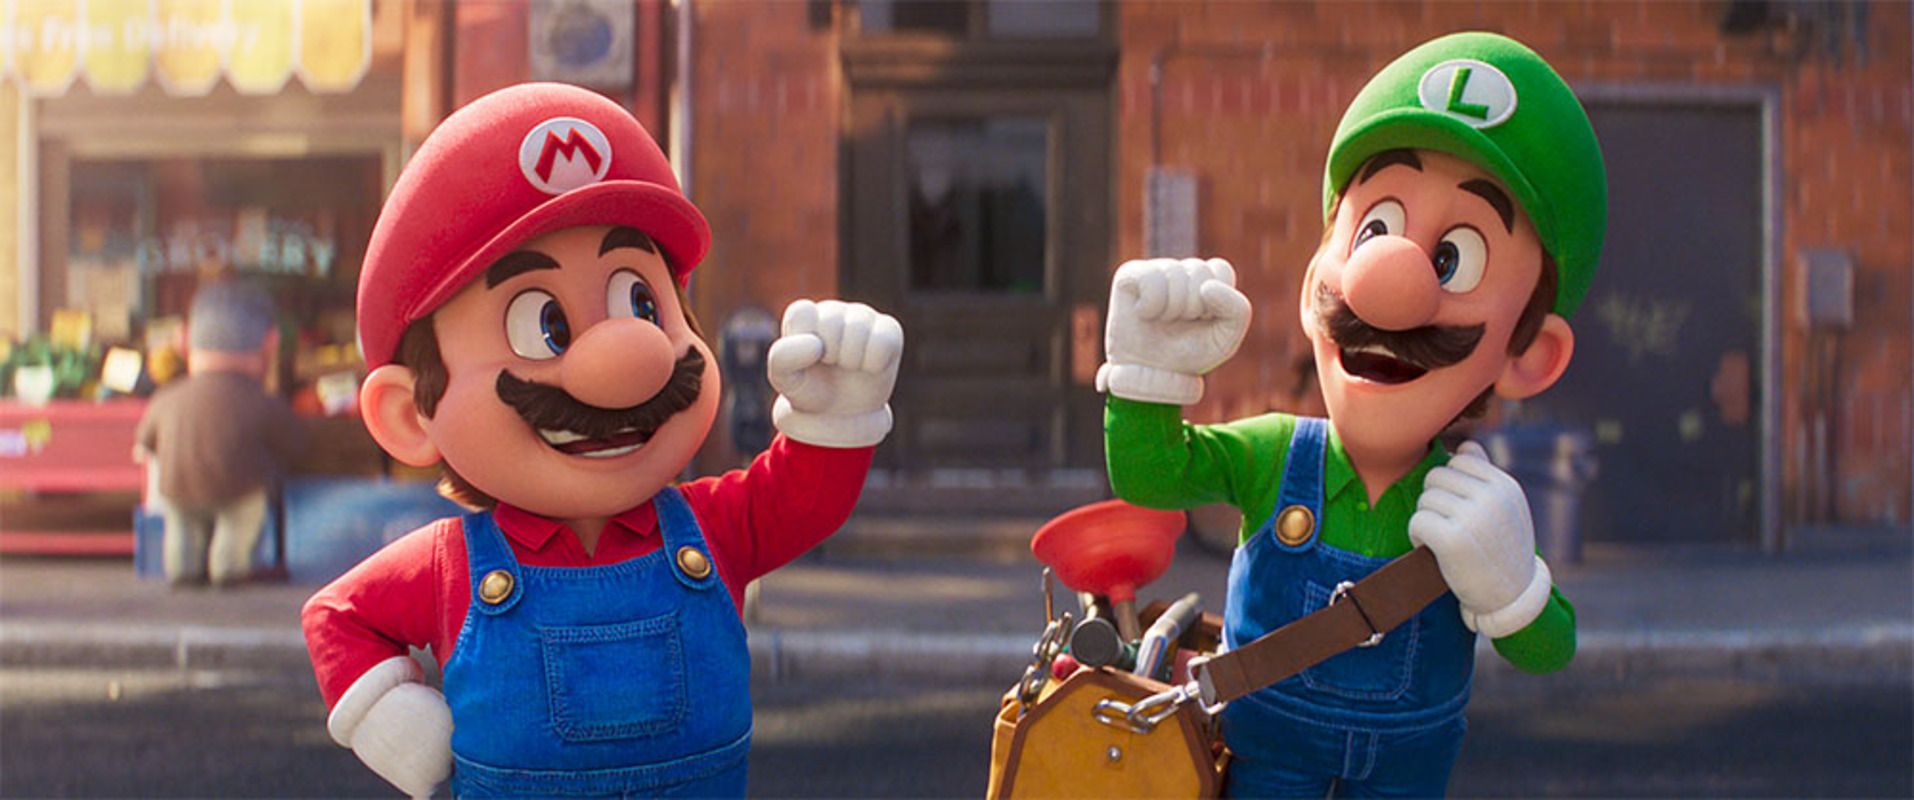 Братья Супер Марио в кино 2023 заработали 1 миллиард долларов – отзывы зрителей на фильм